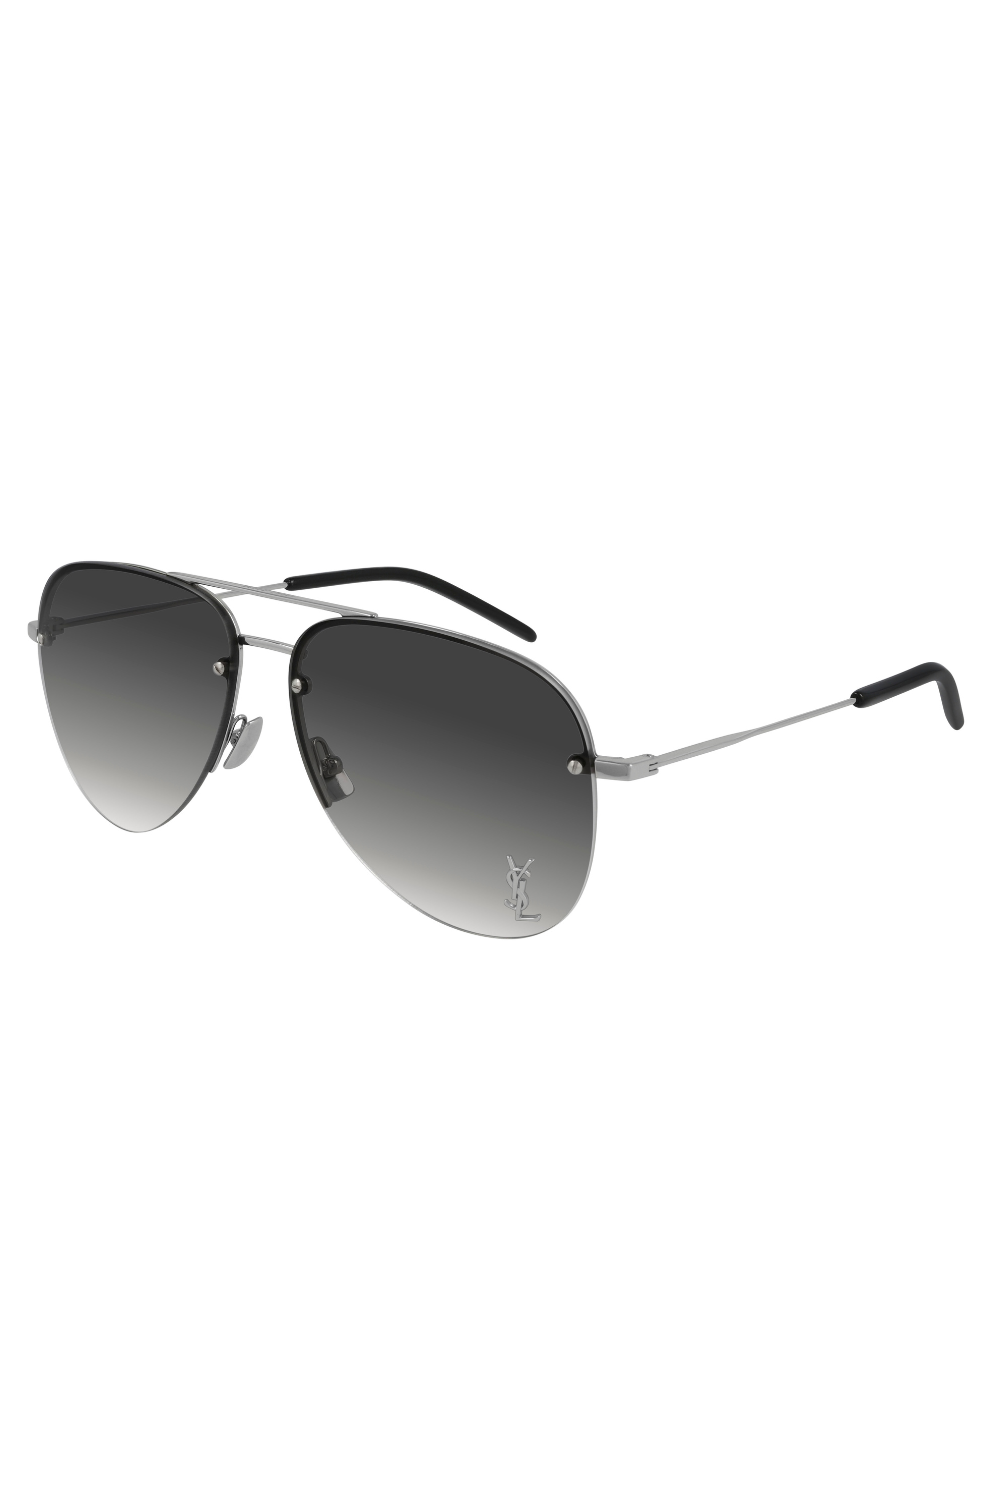 CLASSIC11M005 Sunglasses - Silver